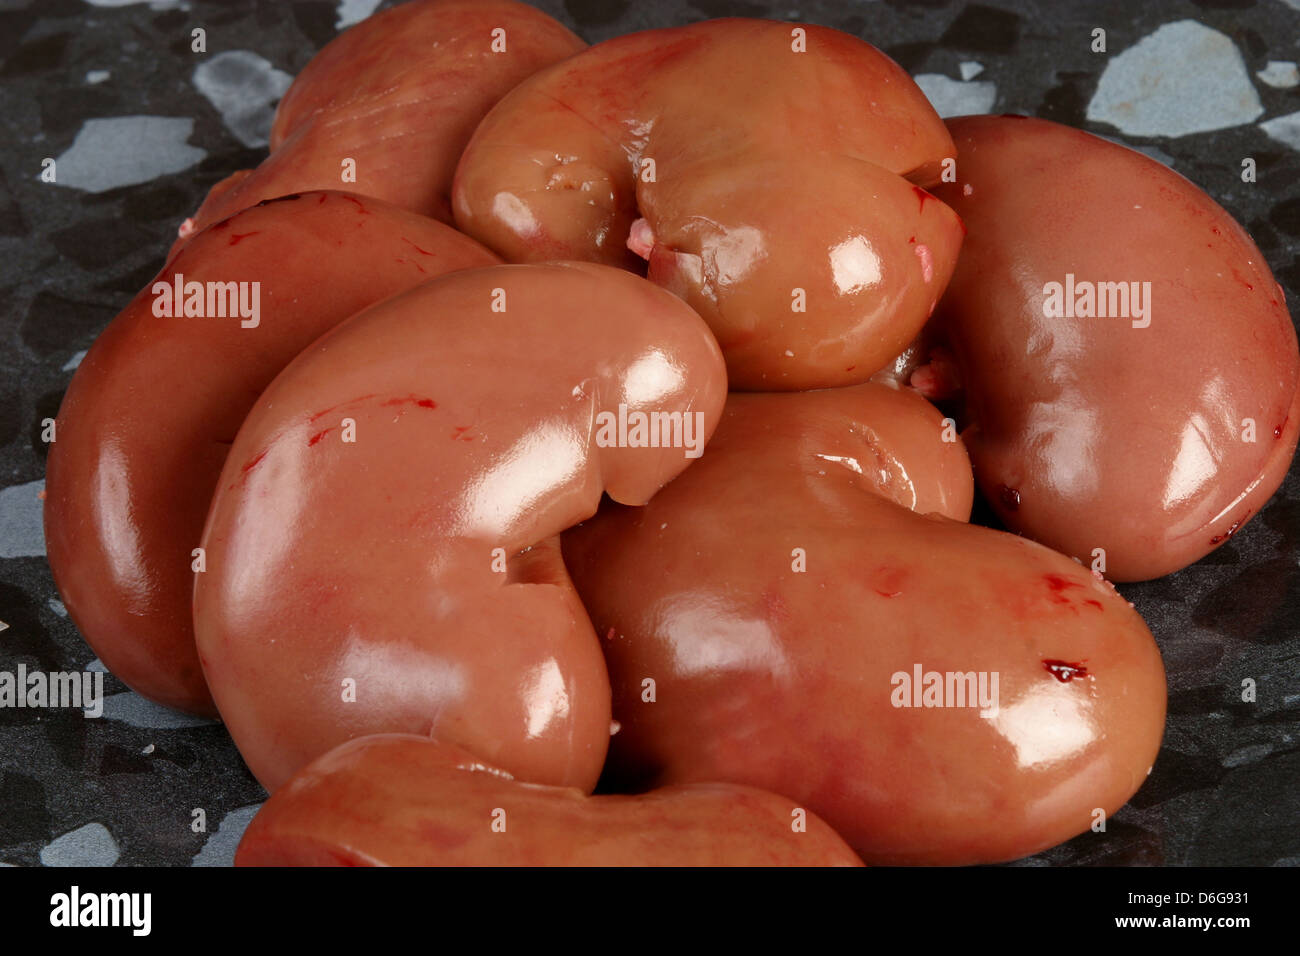 lambs kidneys Stock Photo